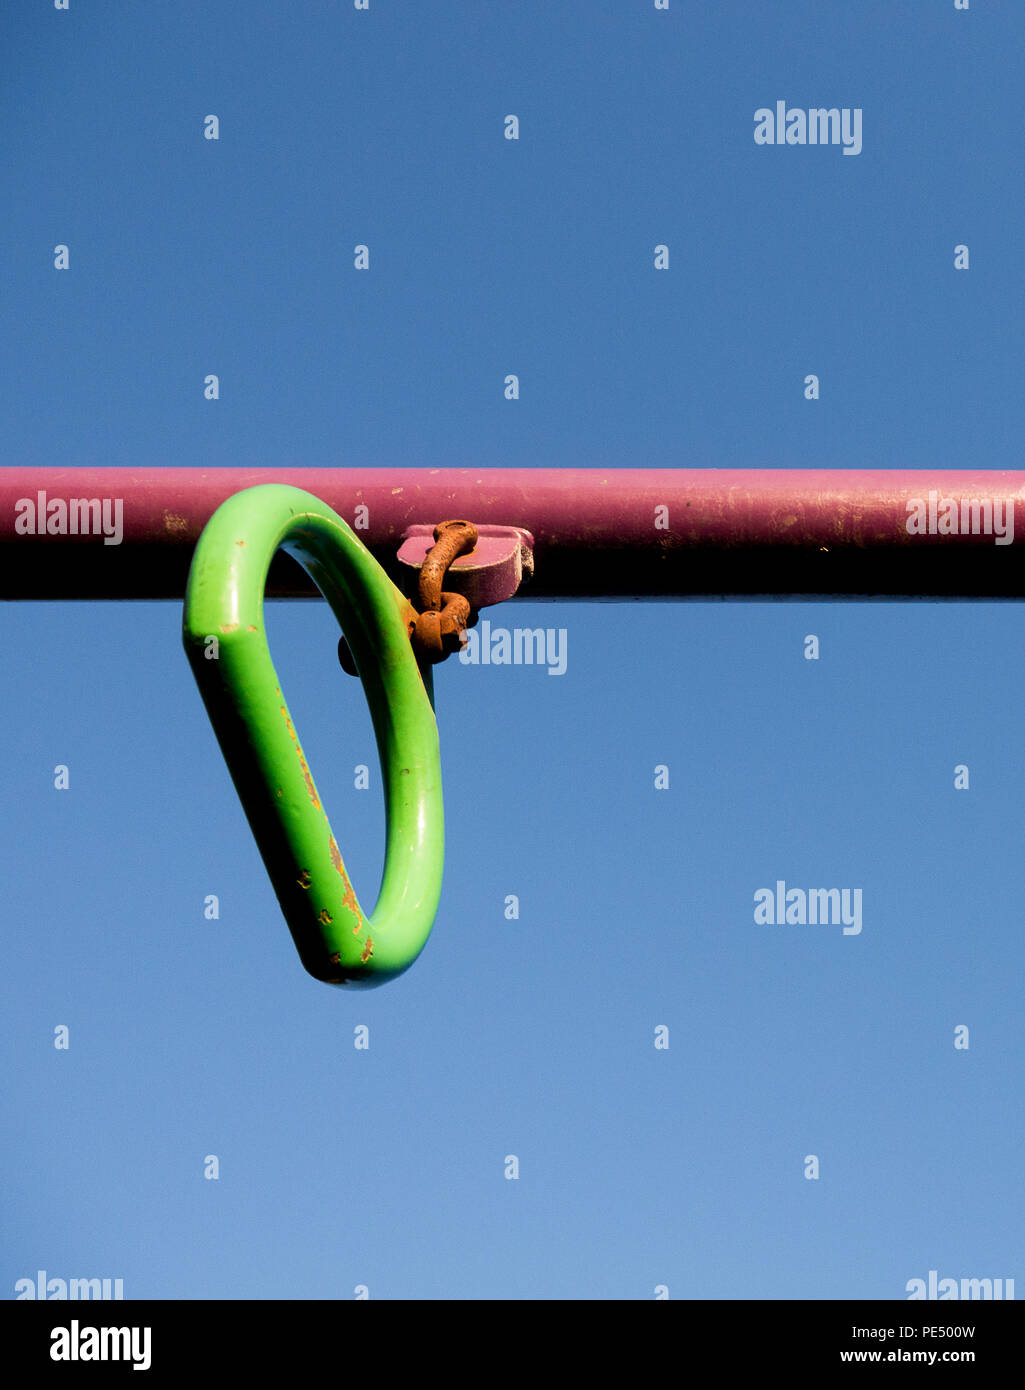 Image en couleur d'un green monkey bar poignée sur un poteau rouge dans une aire de jeux pour enfants, tourné à partir de ci-dessous contre un ciel bleu clair Banque D'Images